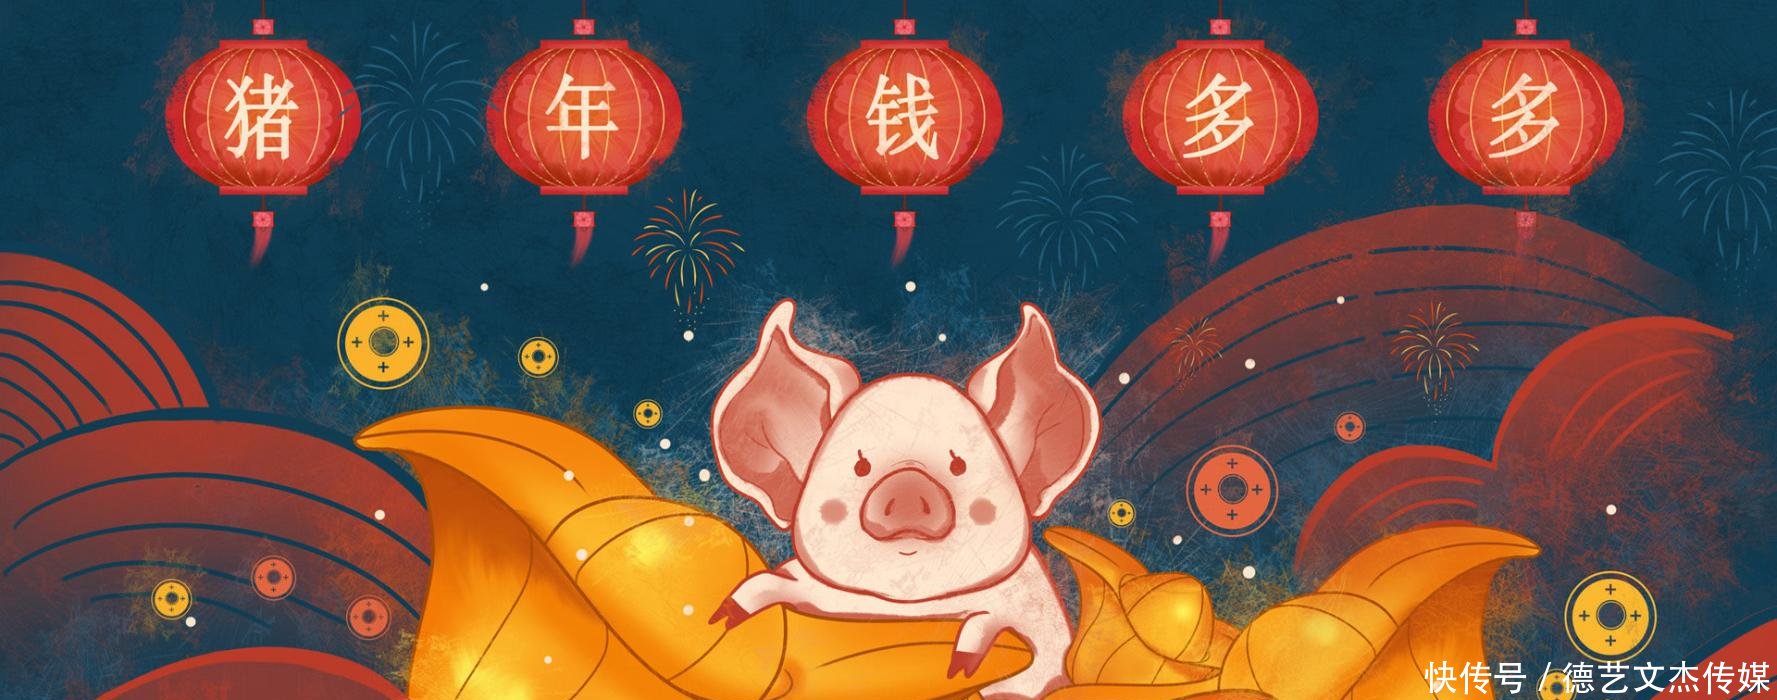 2019年元旦祝福语大全 猪年的第一声问候送上